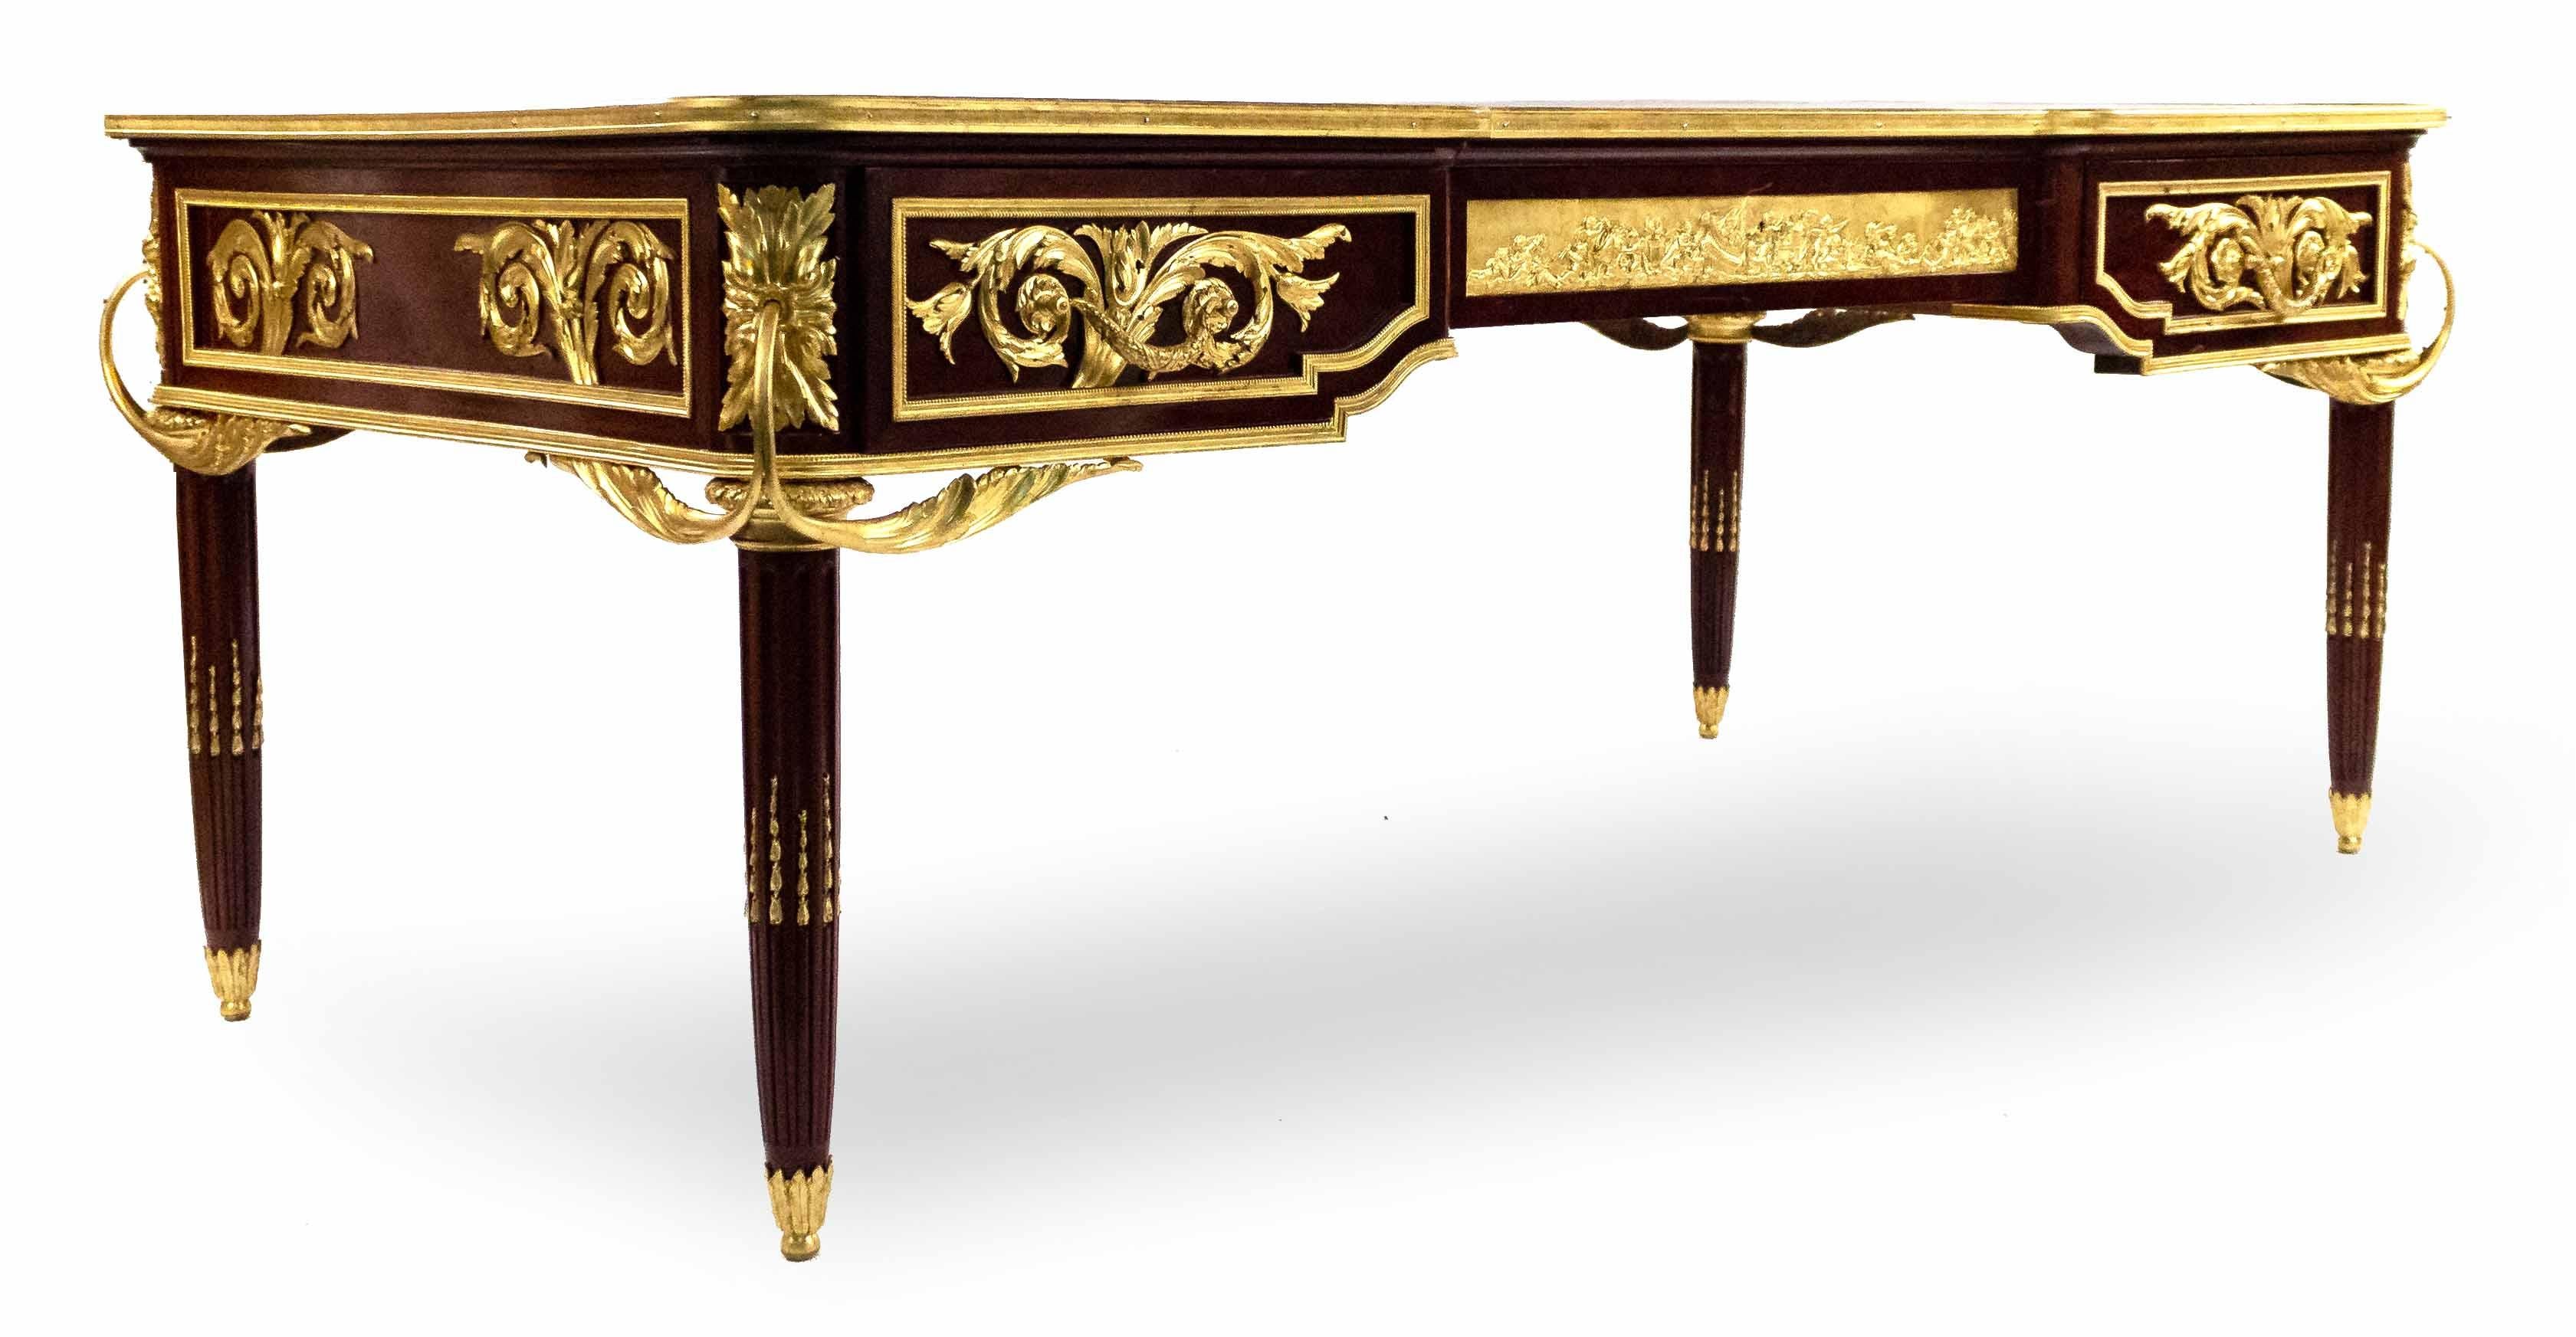 Bureau plat à trois tiroirs de style Louis XVI (XIXe-XXe siècle), monté en bronze doré, avec une plaque centrale représentant une scène allégorique de putti et un dessus en cuir gaufré or.